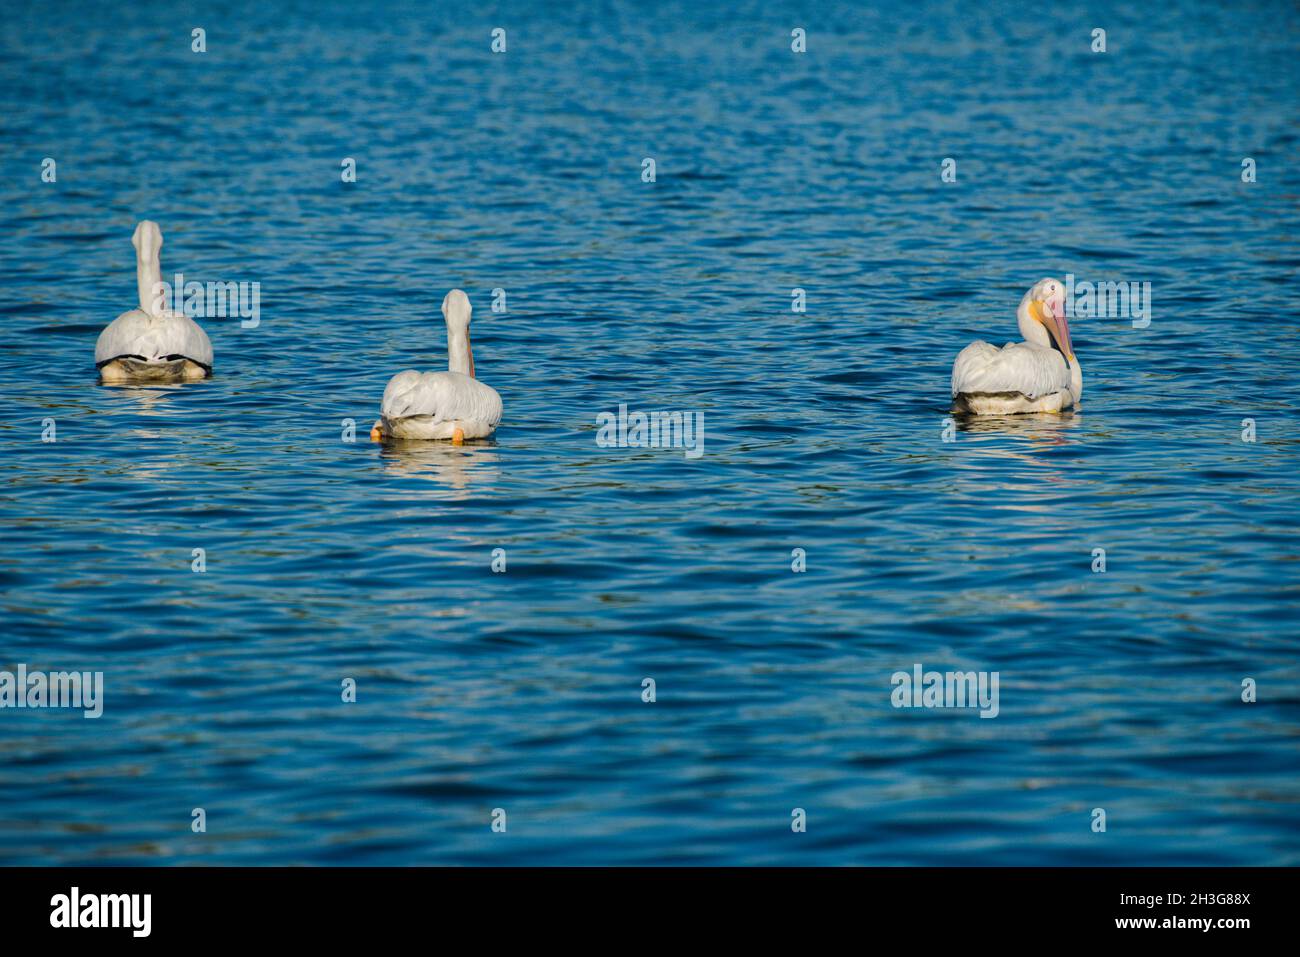 Große weiße Pelikane schwimmen gemächlich auf dem See auf der Suche nach Fisch Abendessen. Drückt Sicherheit in Zahlen und ein Teil der Gruppe gleich Glück und Erfolg, Stockfoto